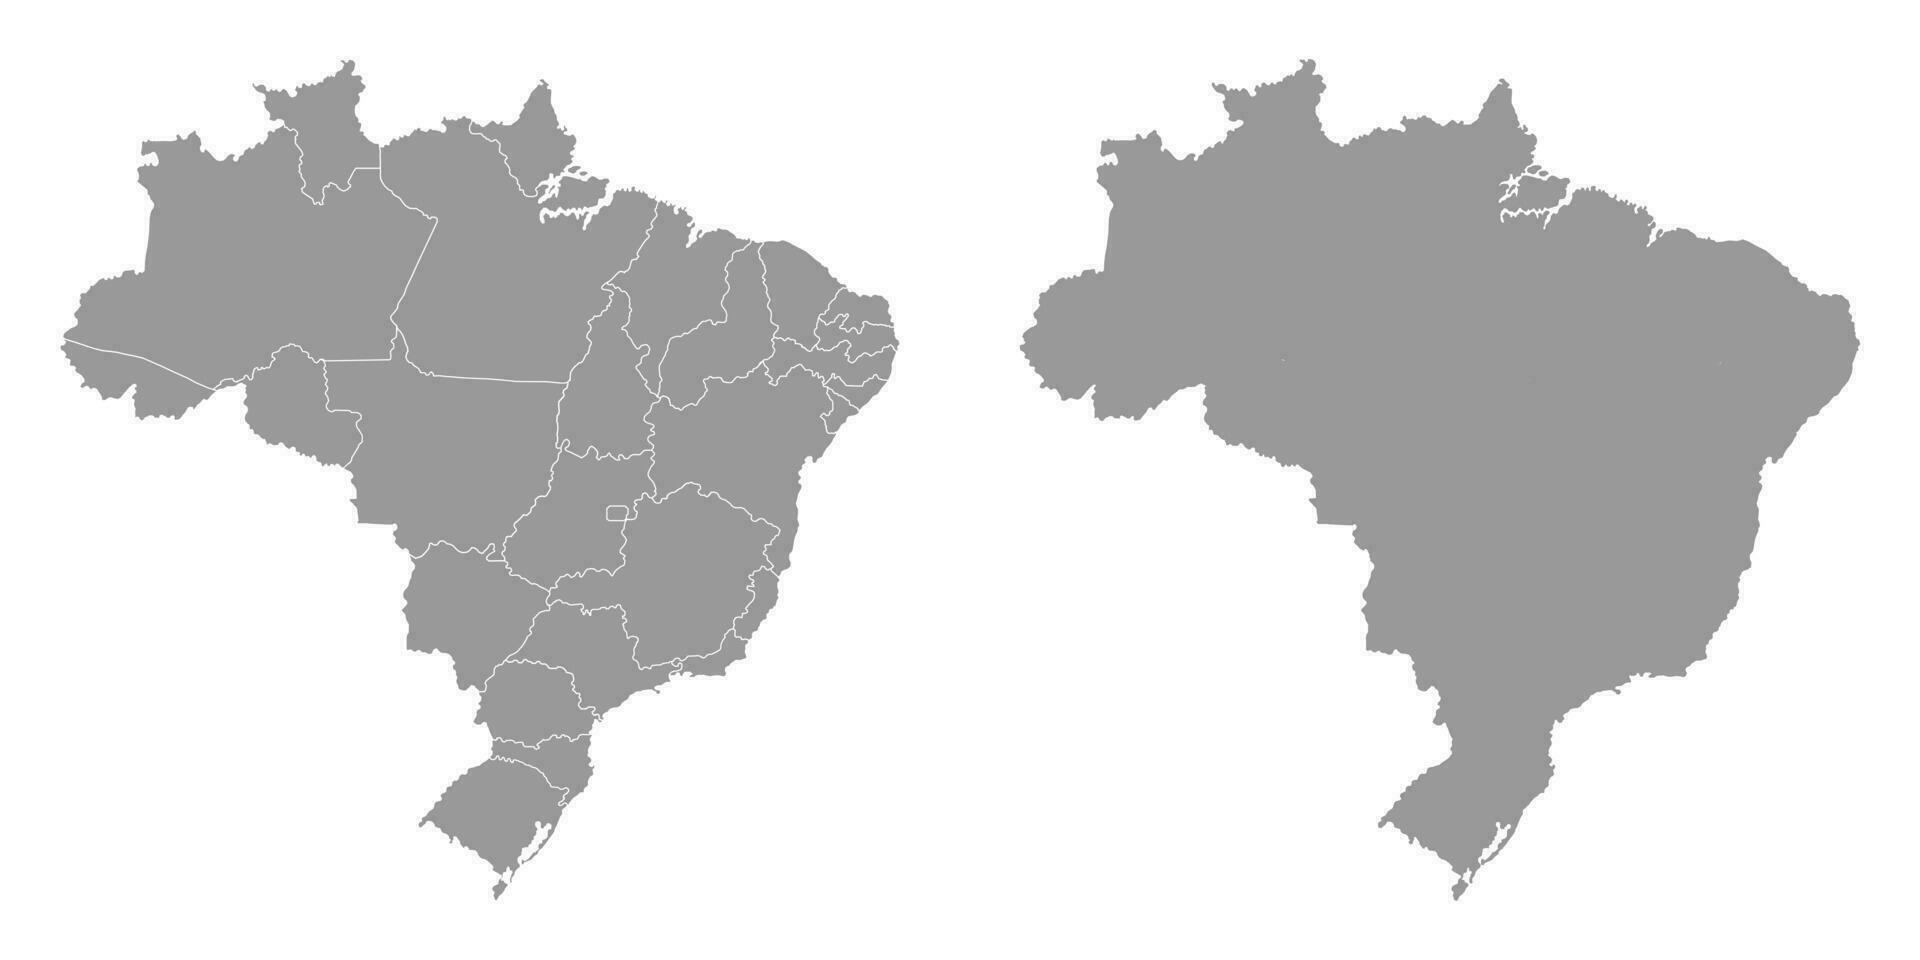 Brazilië grijs kaart met staten. vector illustratie.